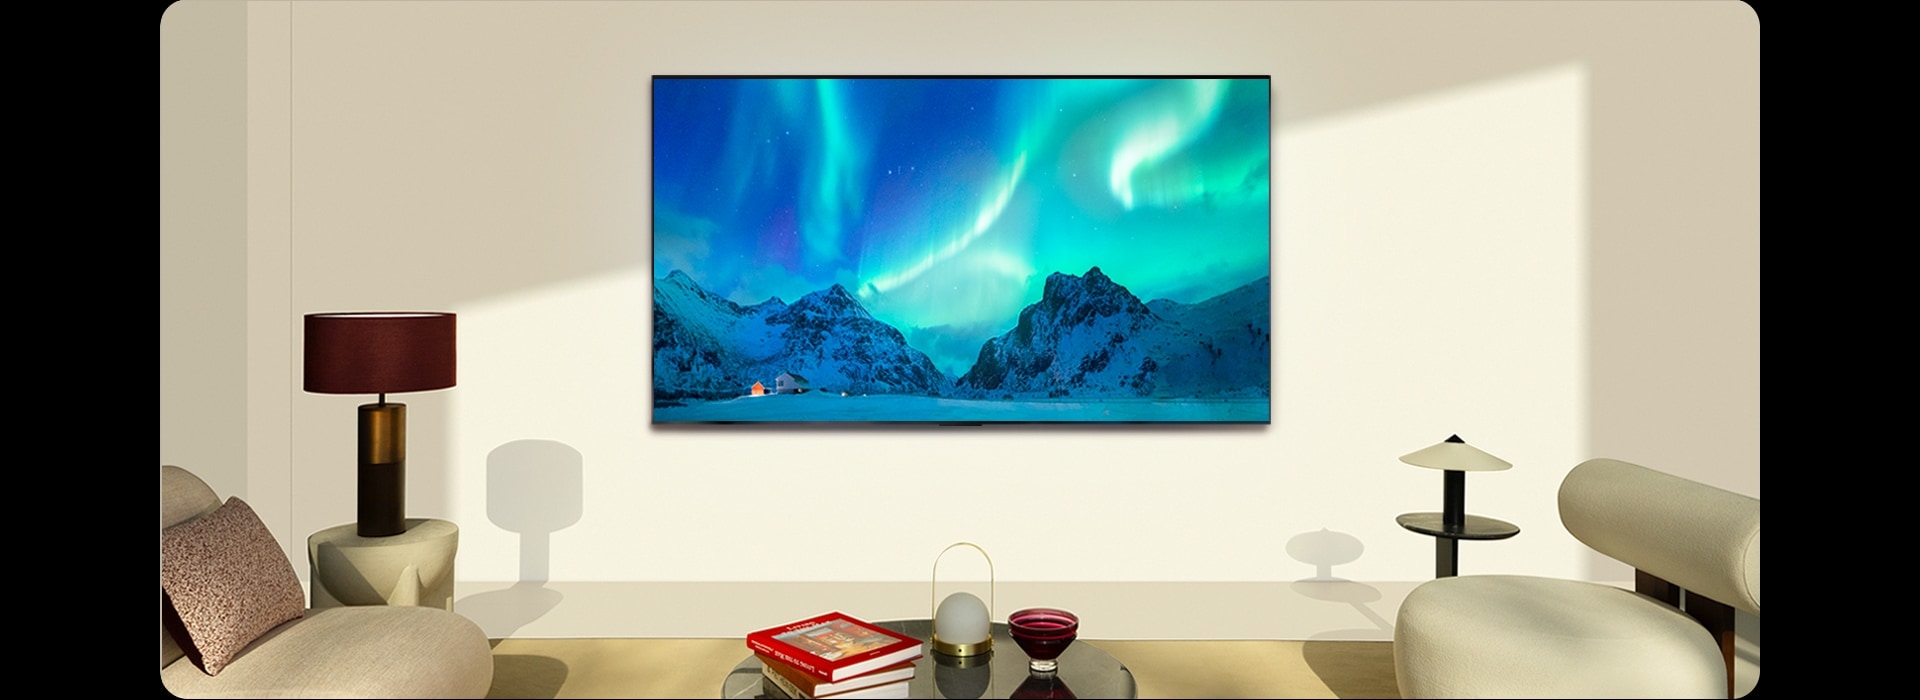 LG OLED TV di ruang tamu modern di siang hari. Gambar layar aurora borealis ditampilkan dengan tingkat kecerahan ideal.